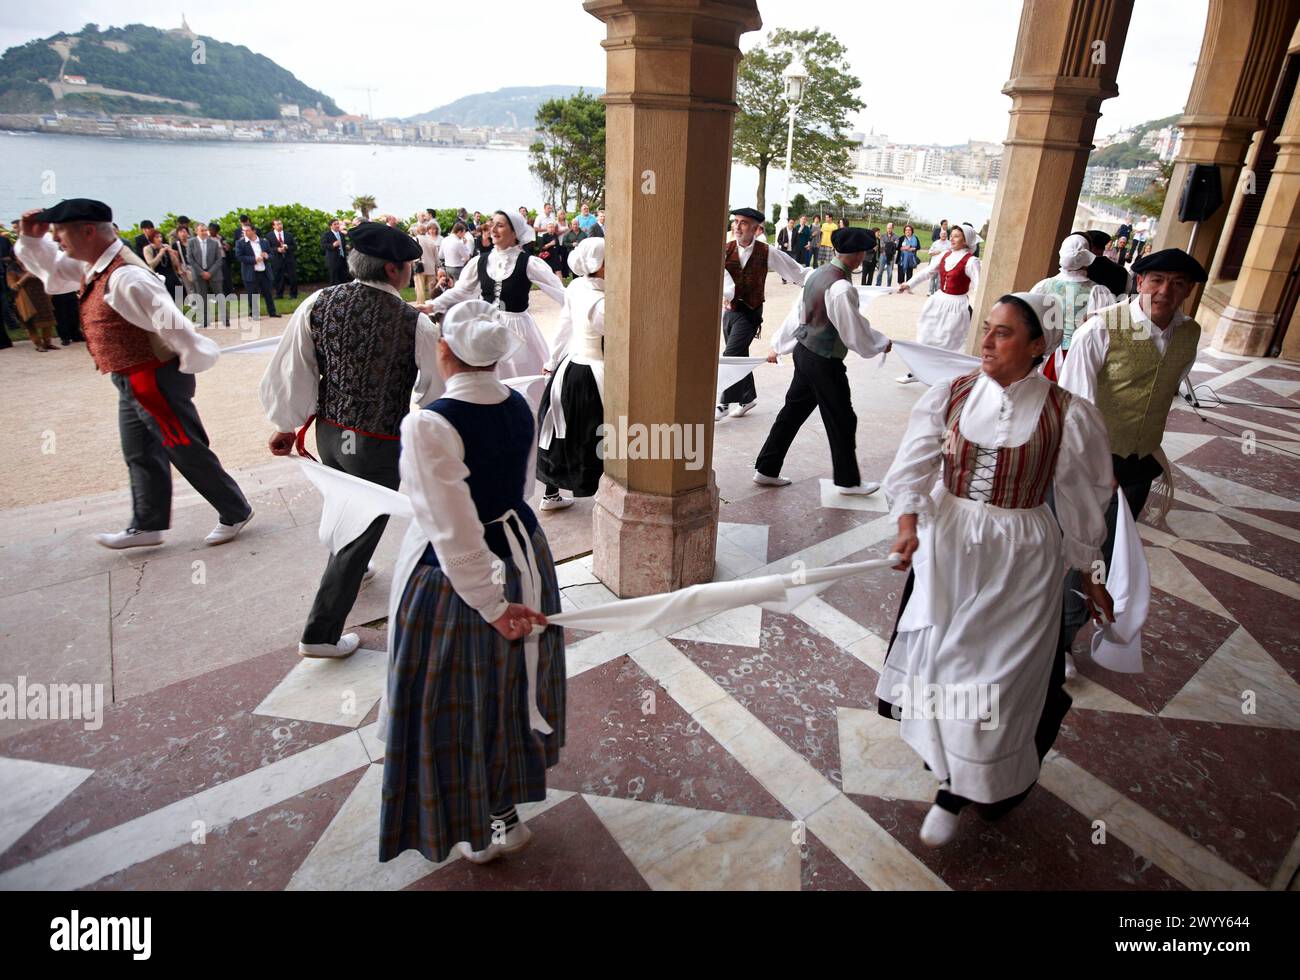 Basque dances, Palacio de Miramar, San Sebastian, Guipuzcoa, Basque Country, Spain. Stock Photo